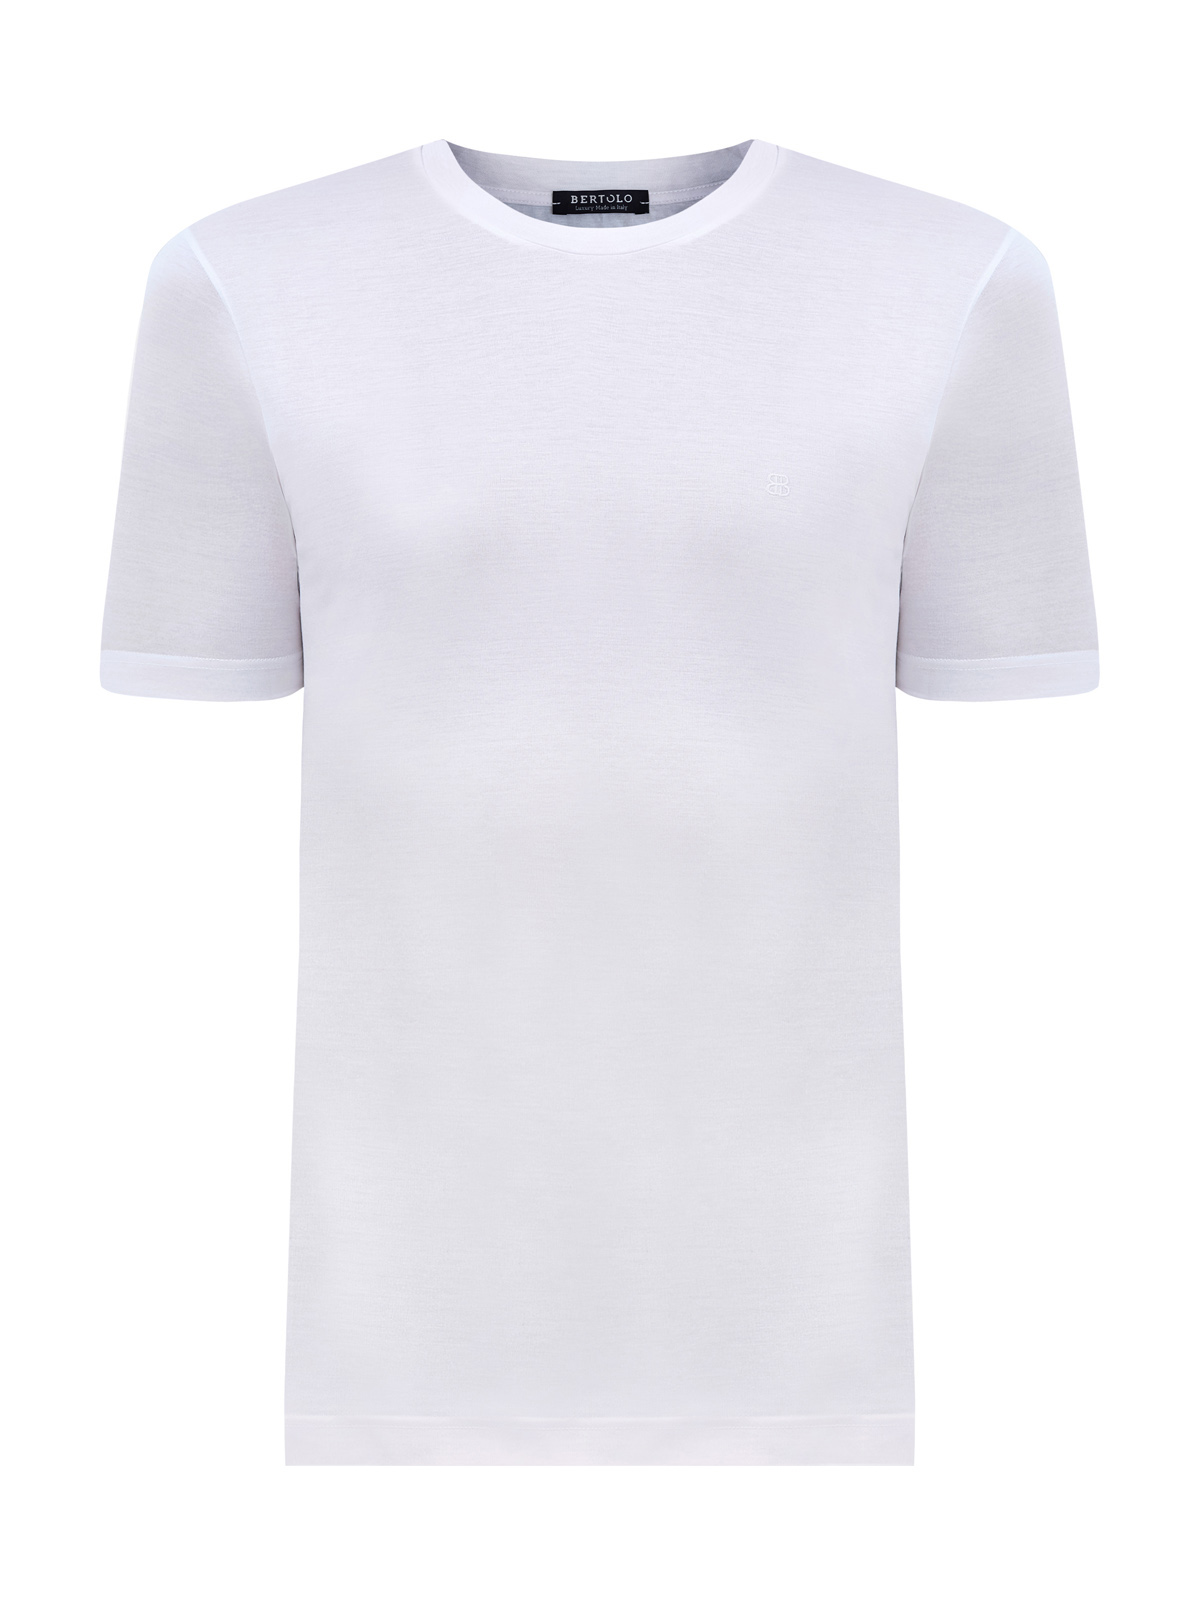 Базовая футболка из хлопка с вышитым логотипом в тон BERTOLO, цвет белый, размер 48;50;52;54;56 - фото 1